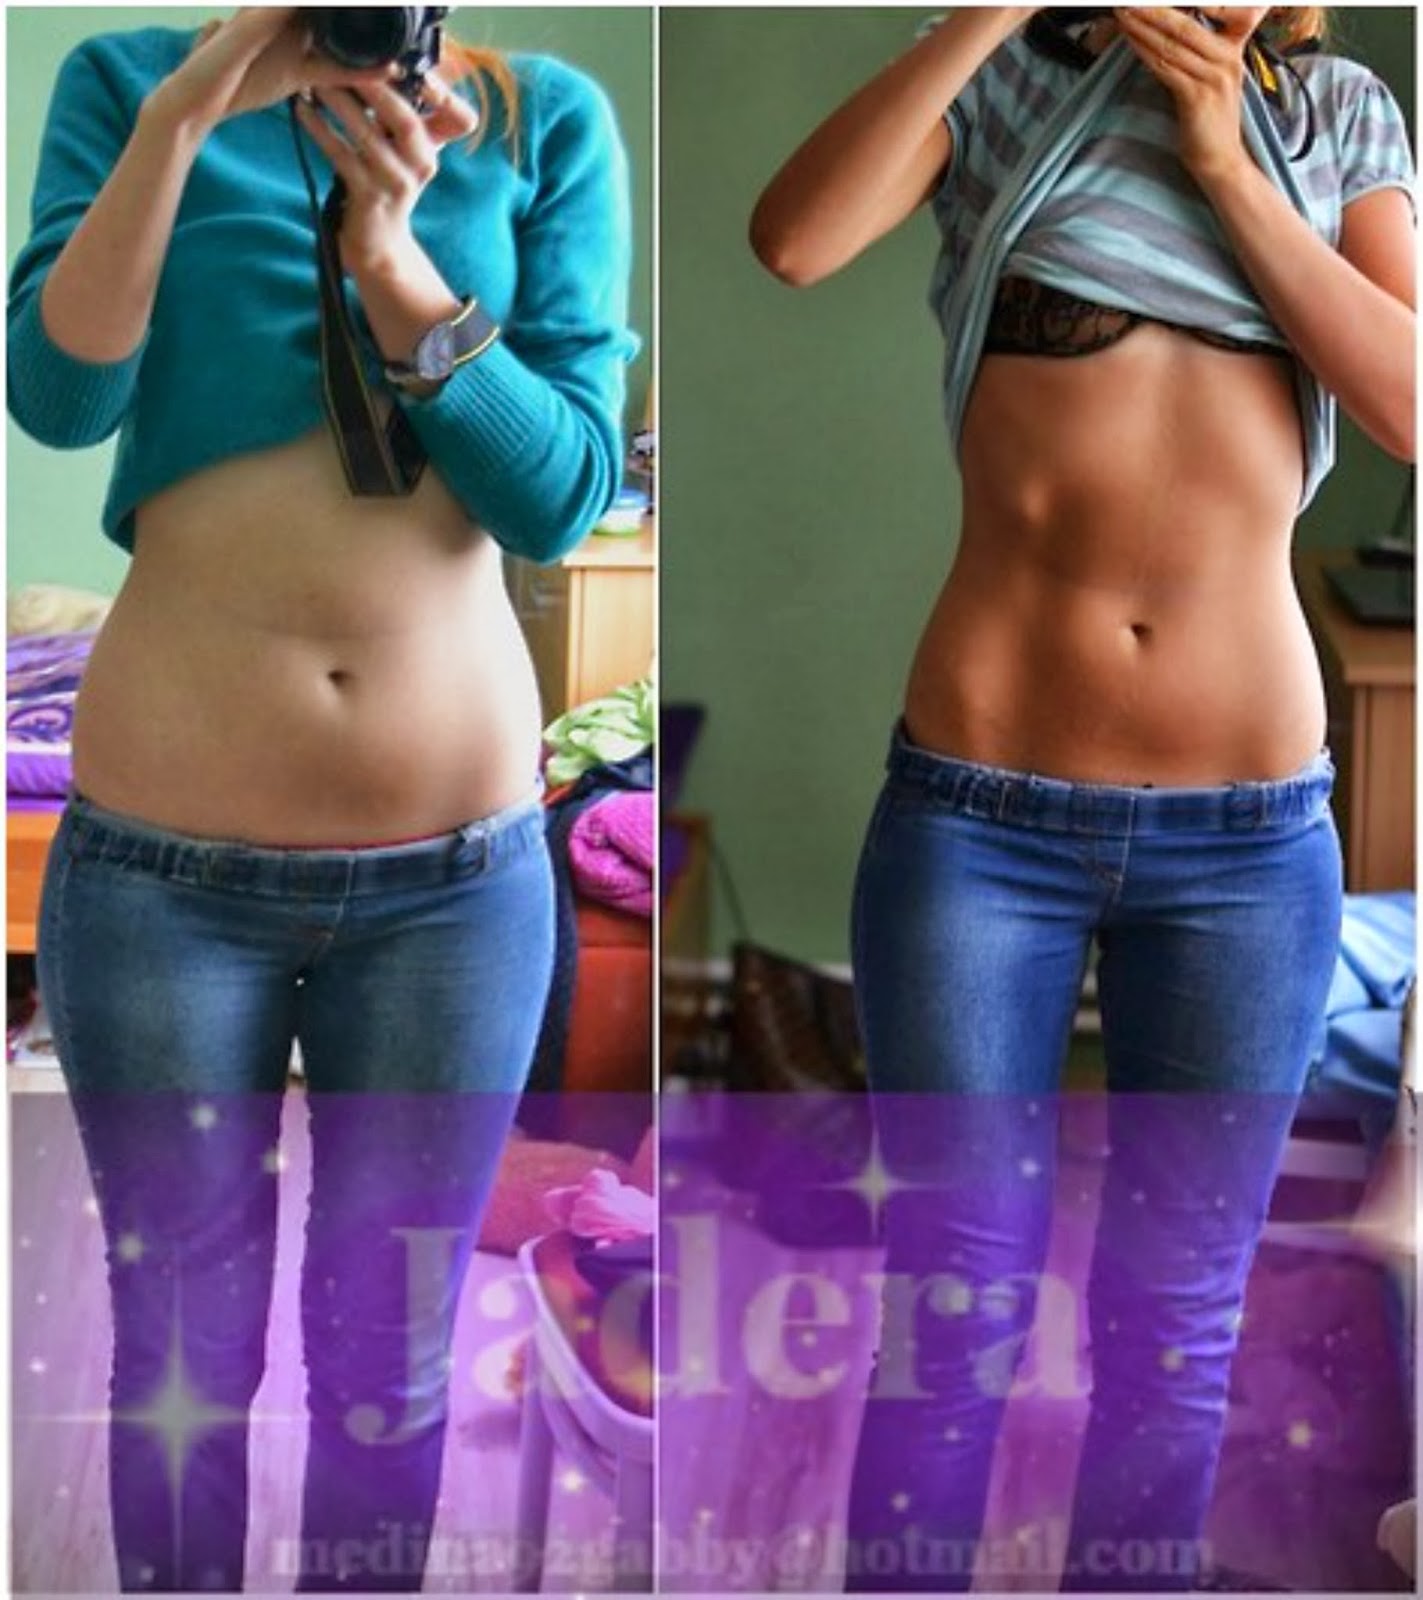 http://2.bp.blogspot.com/-FWoz6vkNo9M/UvMJkbpfJqI/AAAAAAAAAB8/XpgyisjGZJc/s1600/276-weight-loss-before-after-women-stomach.jpg